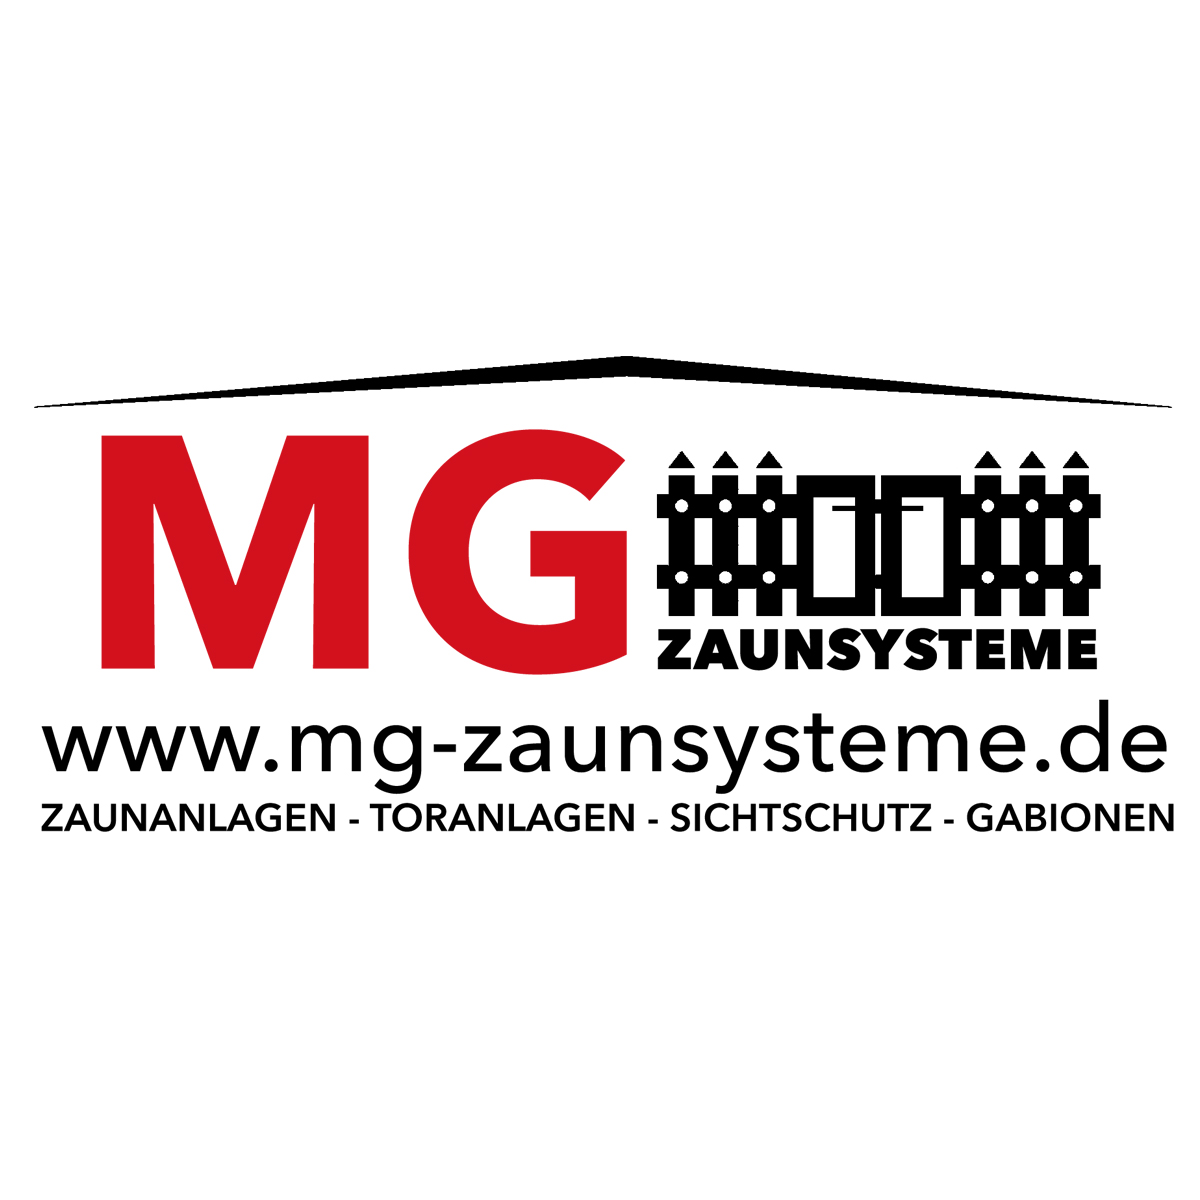 MG Zaunsysteme in Augustdorf - Logo